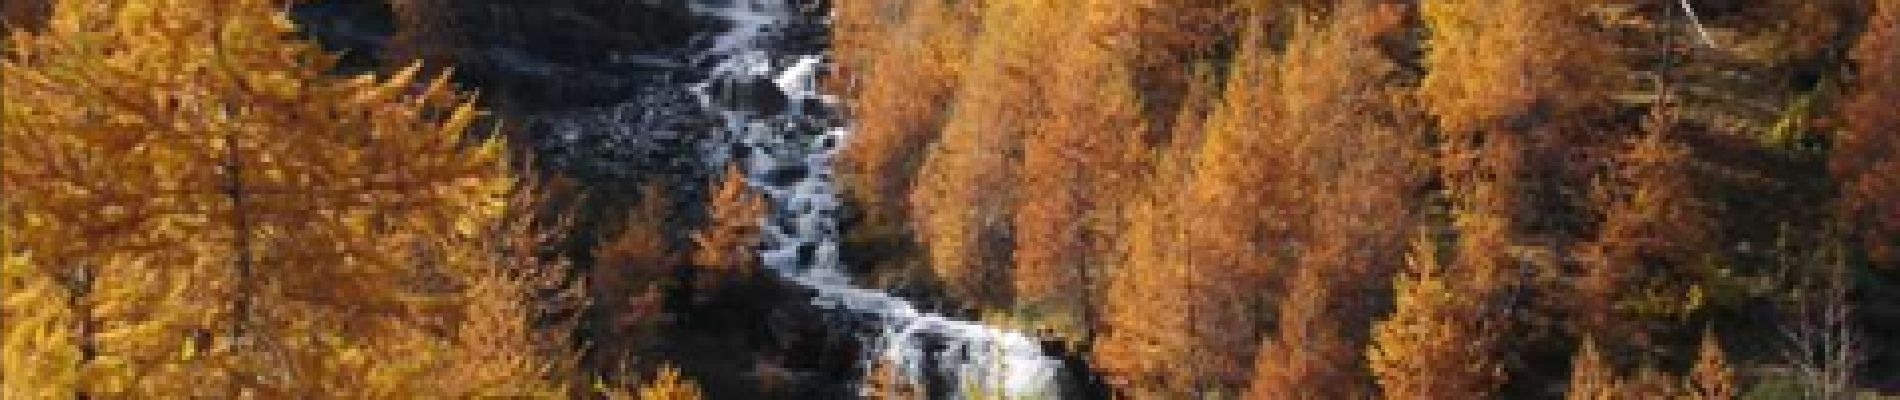 Punto di interesse Puy-Saint-Vincent - Les cascades - Photo